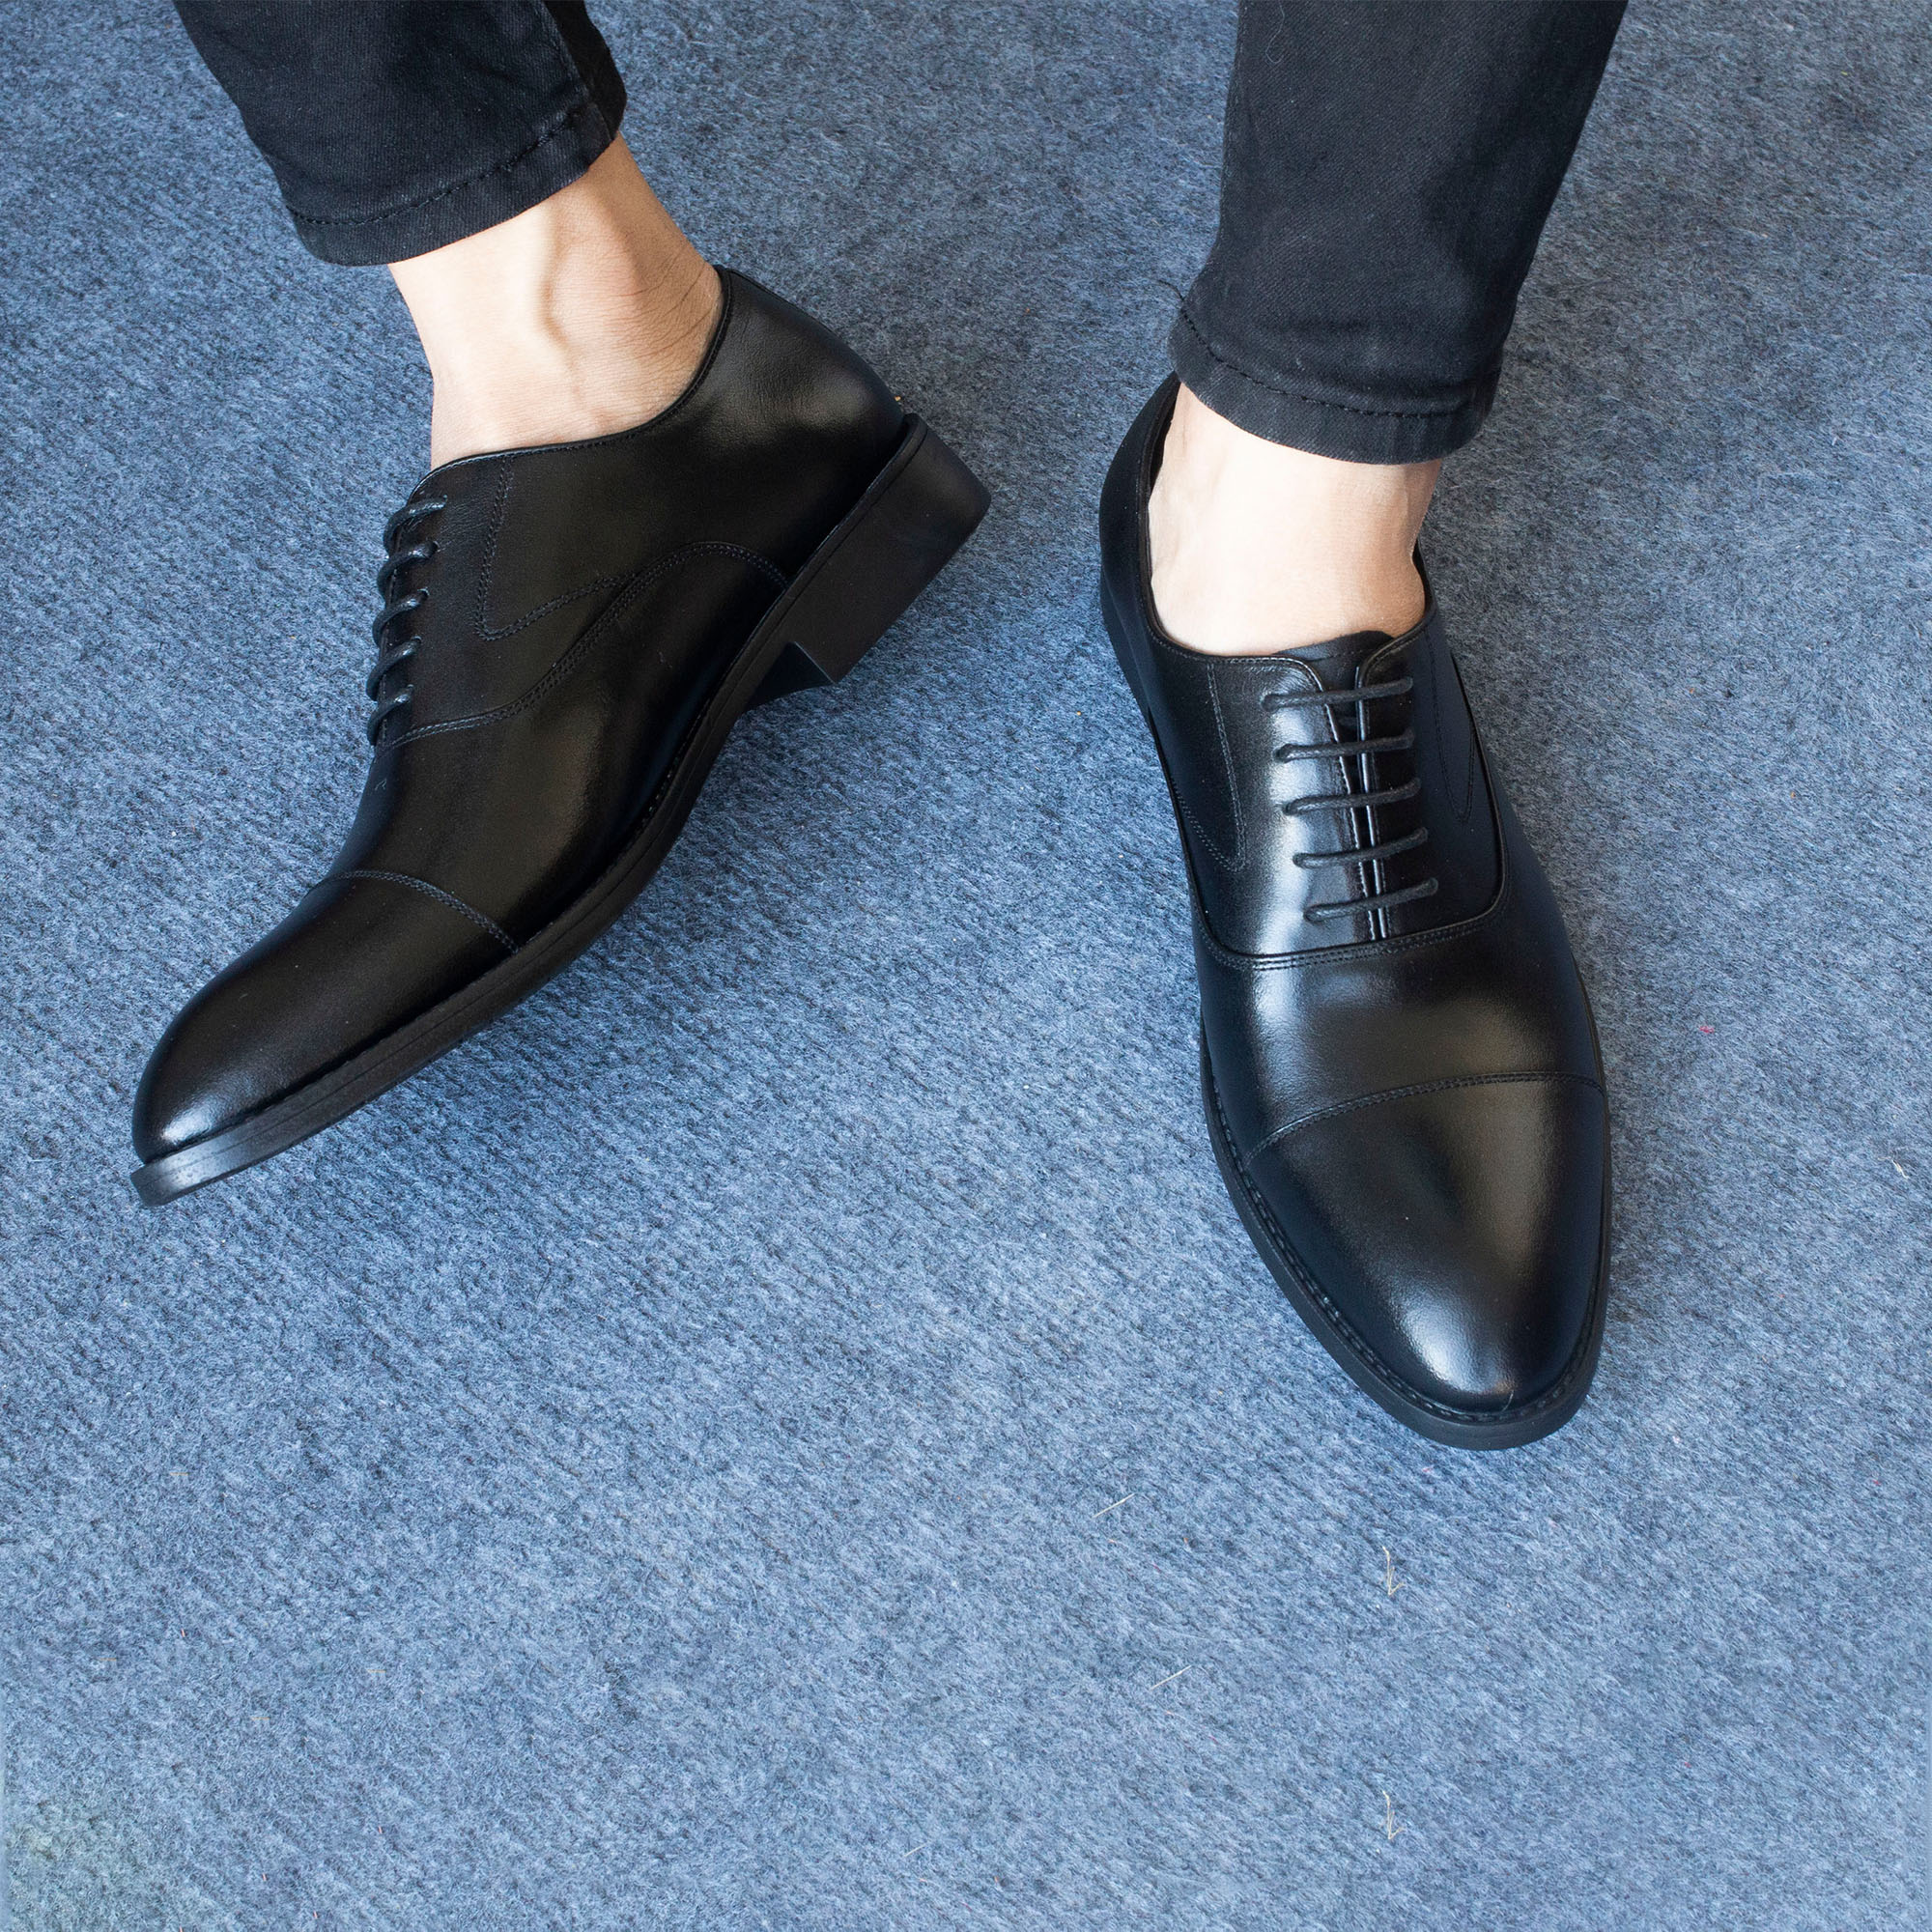 Hình ảnh Giày da nam, giày oxford công sở Bụi Leather G106 - Da bò Nappa cao cấp - Bảo hành 12 tháng